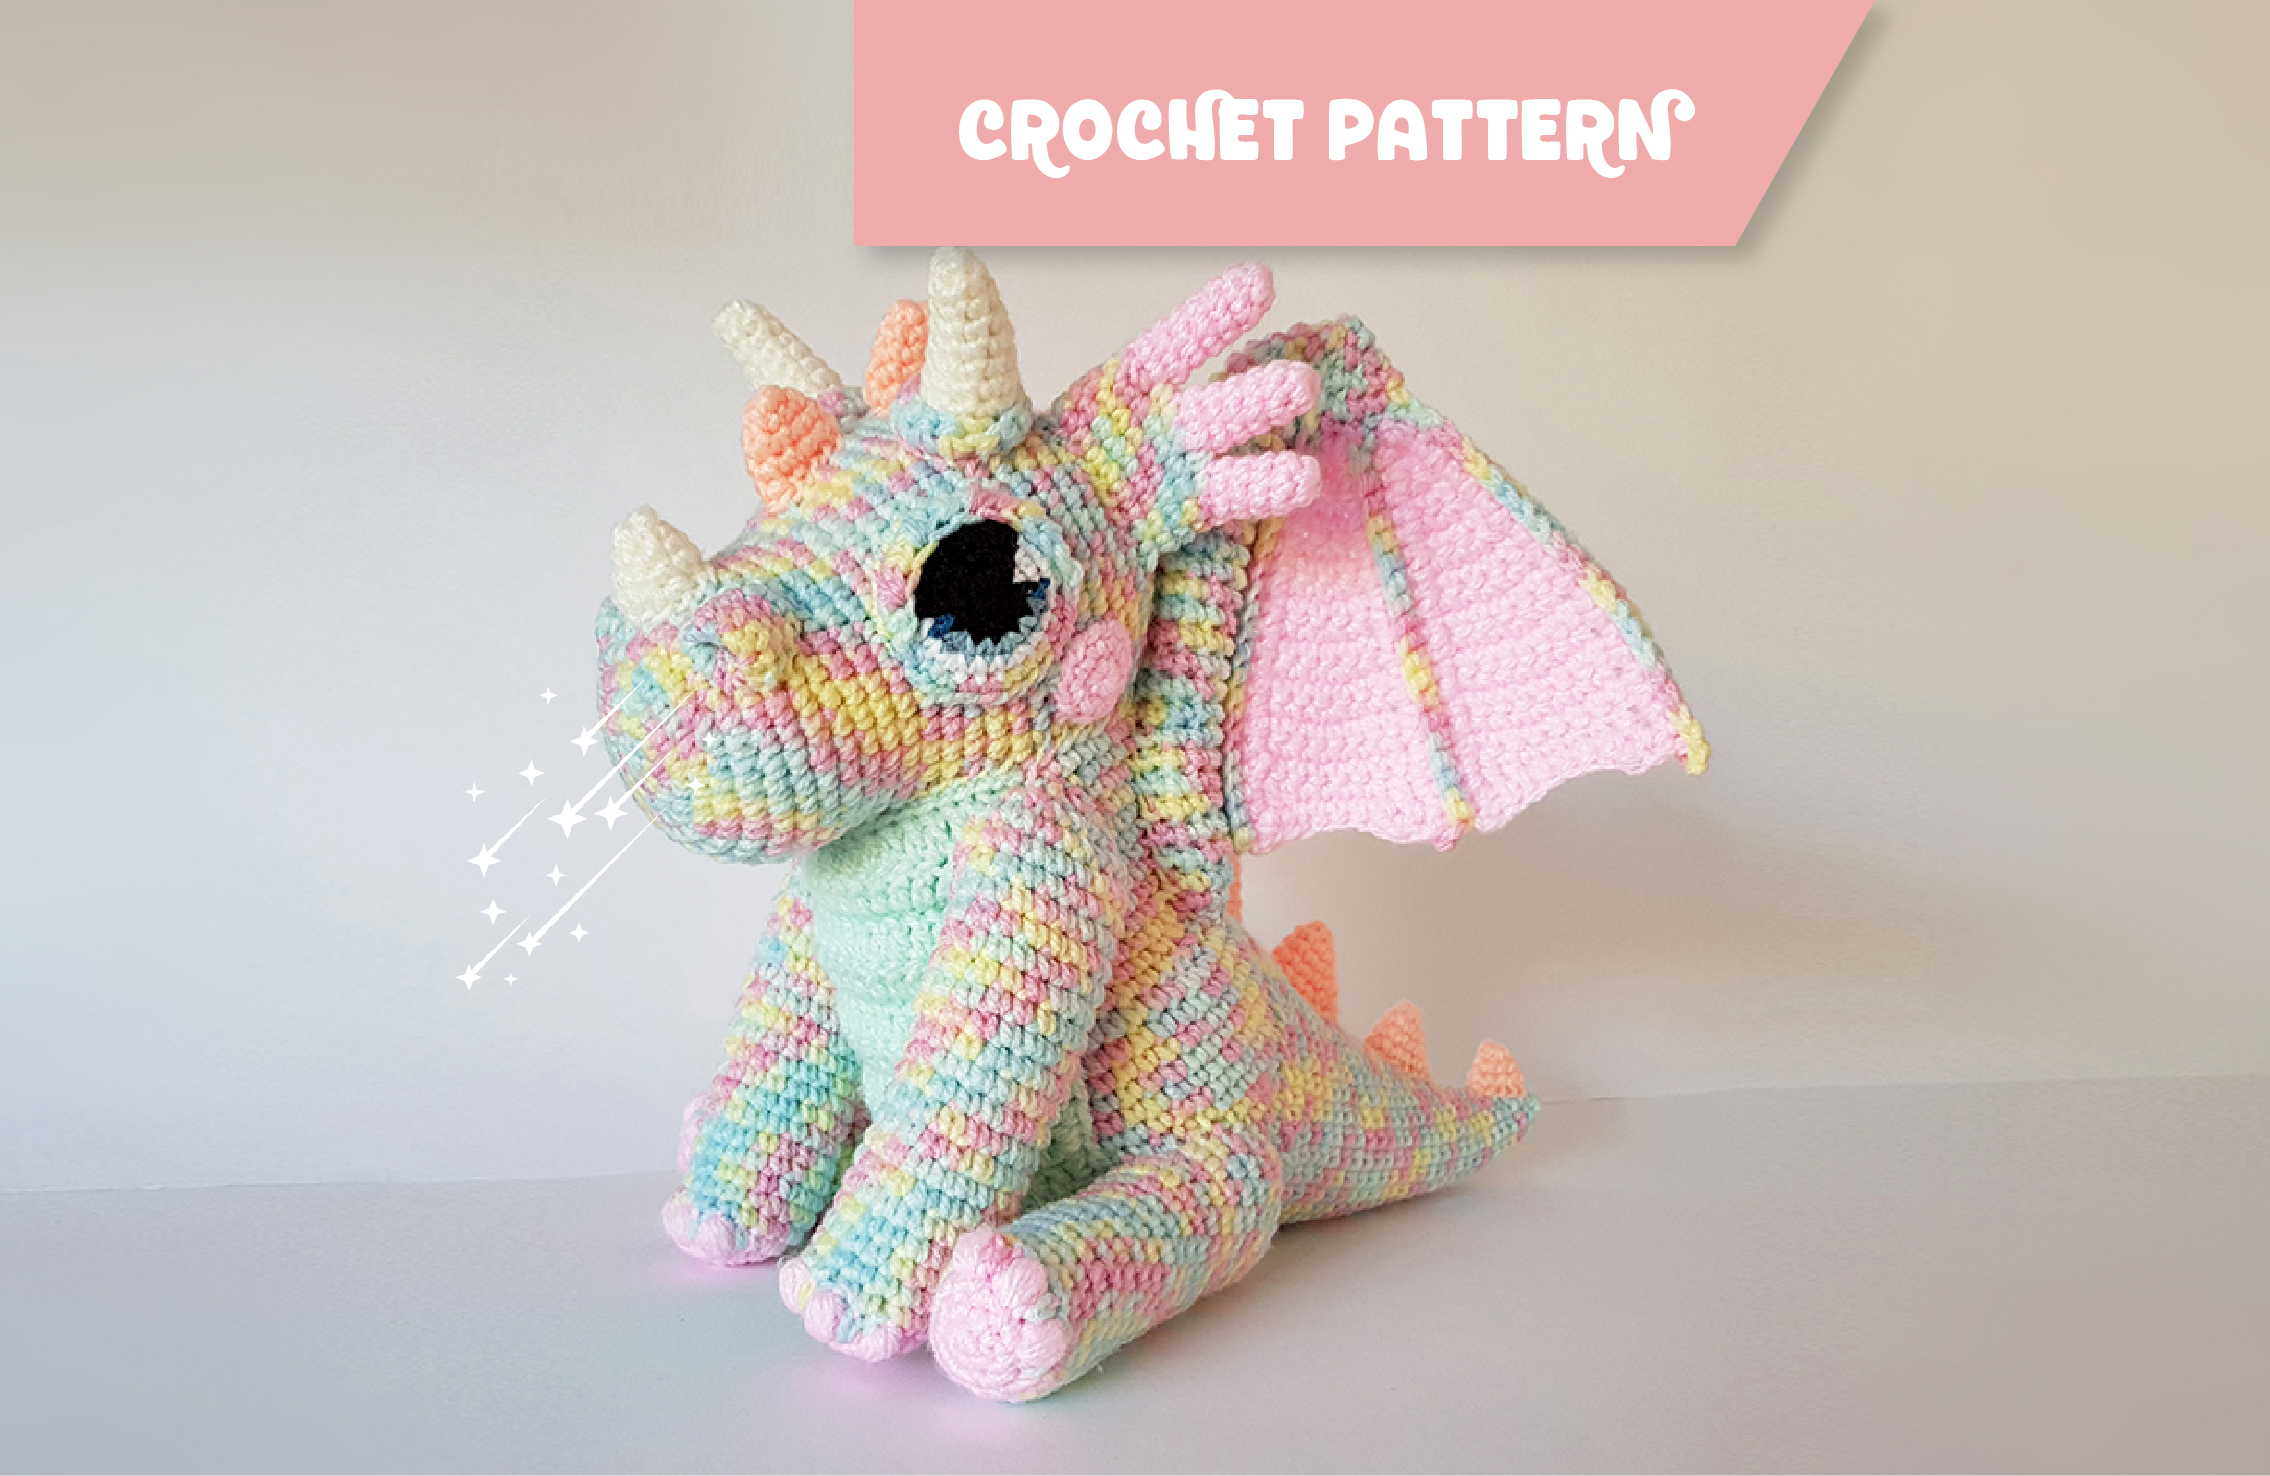 How To Follow A Crochet Pattern Orbit The Dragon Crochet Pattern Projectarian Shop